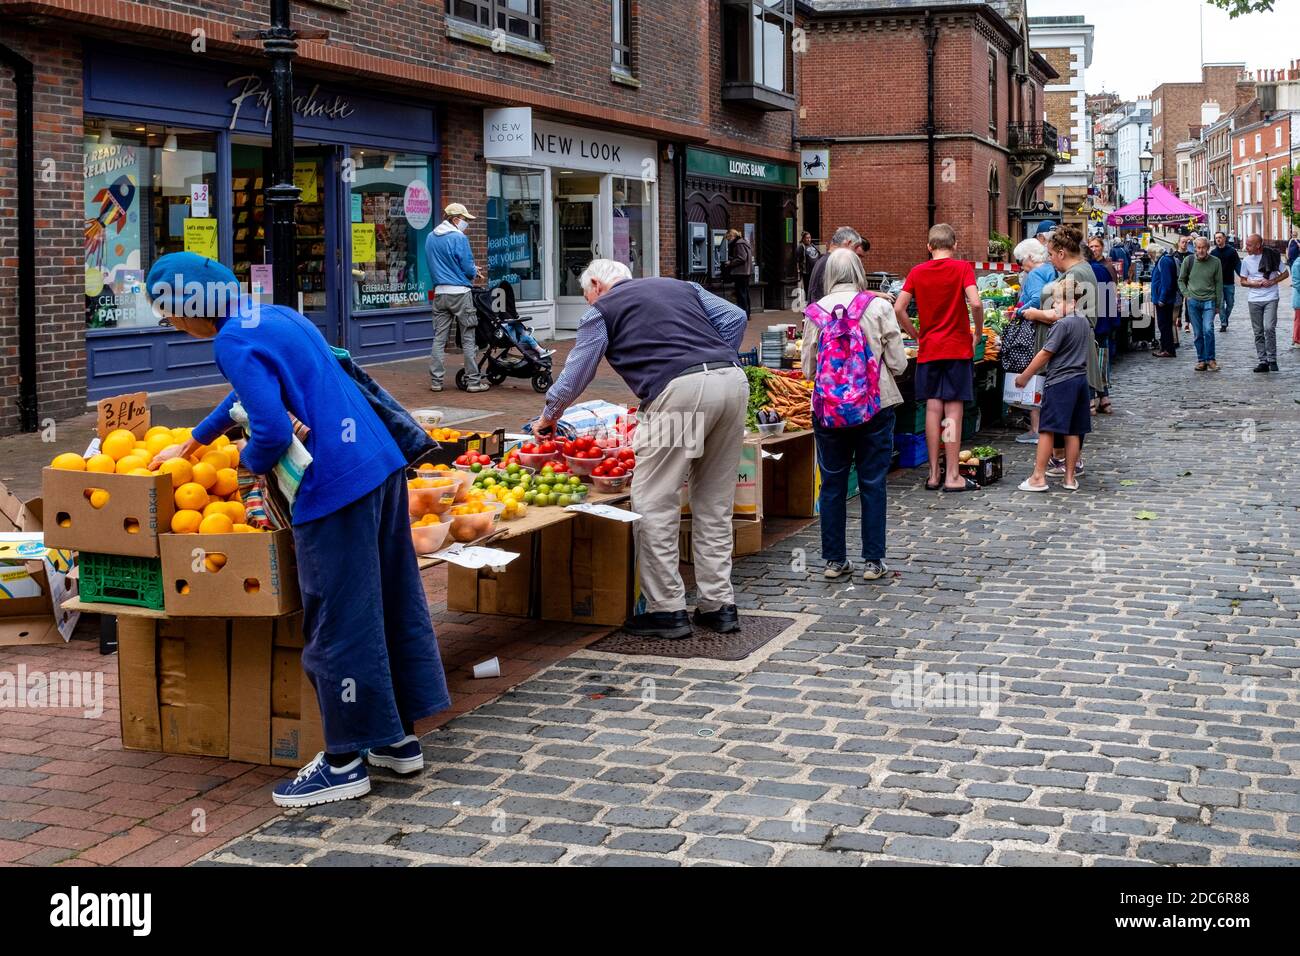 Les gens de la région achètent des fruits et des légumes à un marché de Sall, High Street, Lewes, East Sussex, Royaume-Uni. Banque D'Images